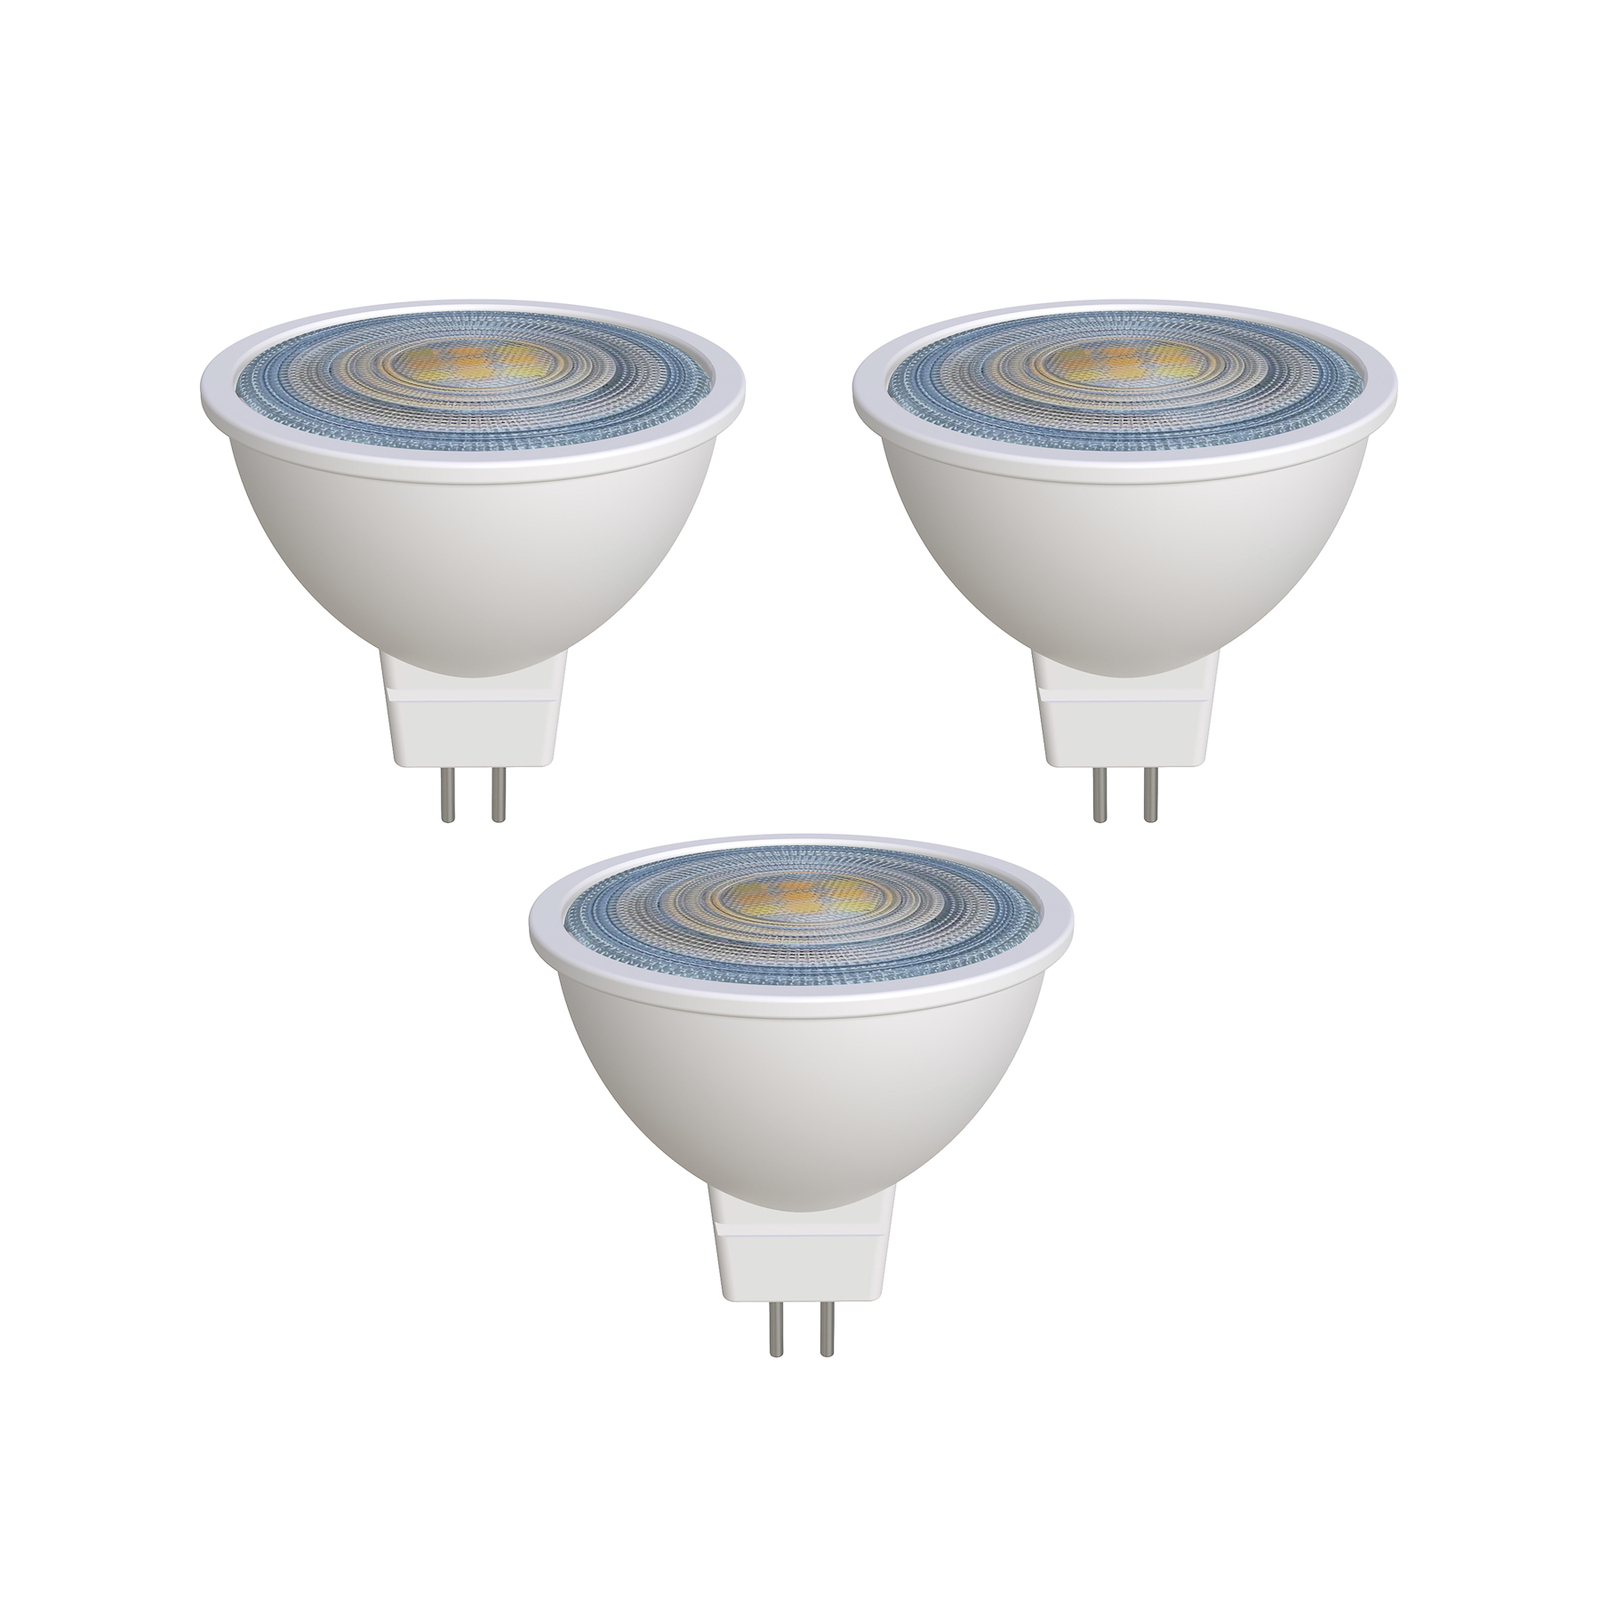 Prios LED reflectorlamp GU5.3 7.5W 621lm 36° wit 840 set van 3